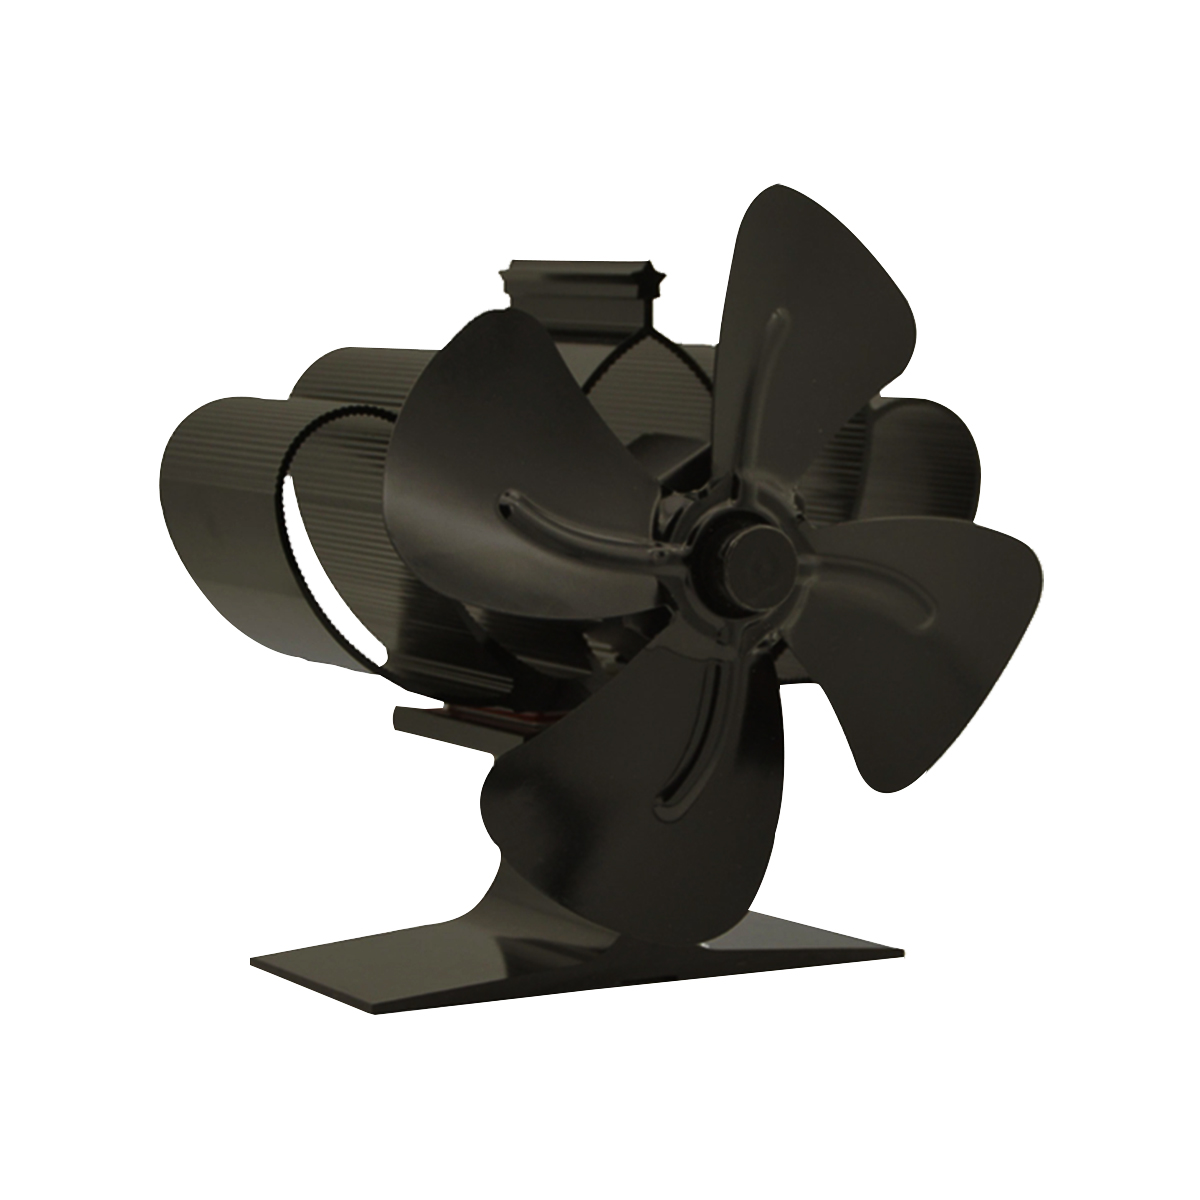 

Fireplace Fan 4-Blade Heat Powered Stove Fan for Wood Log Burner Ultra Quiet Warm Air Eco-Friendly Fan